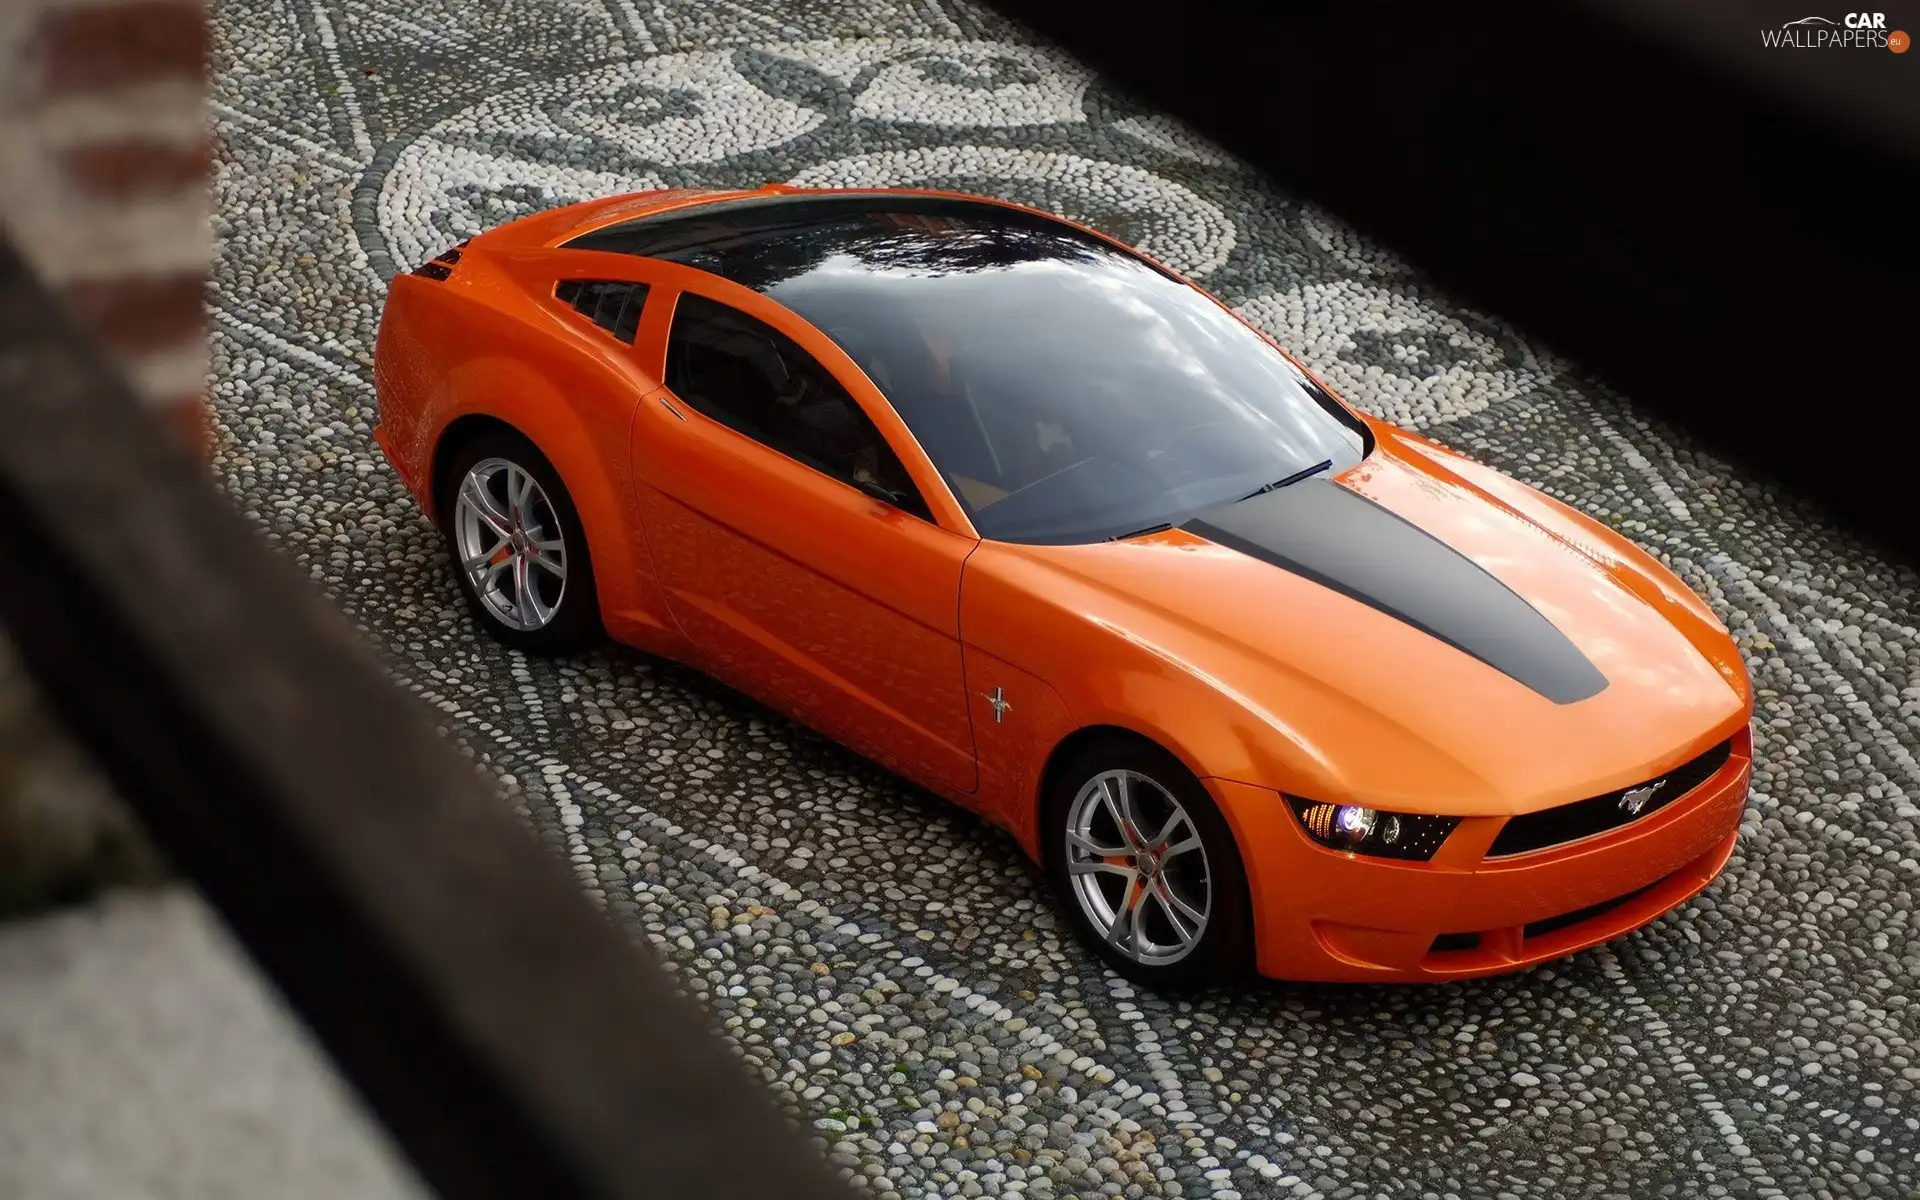 Ford Mustang, Orange